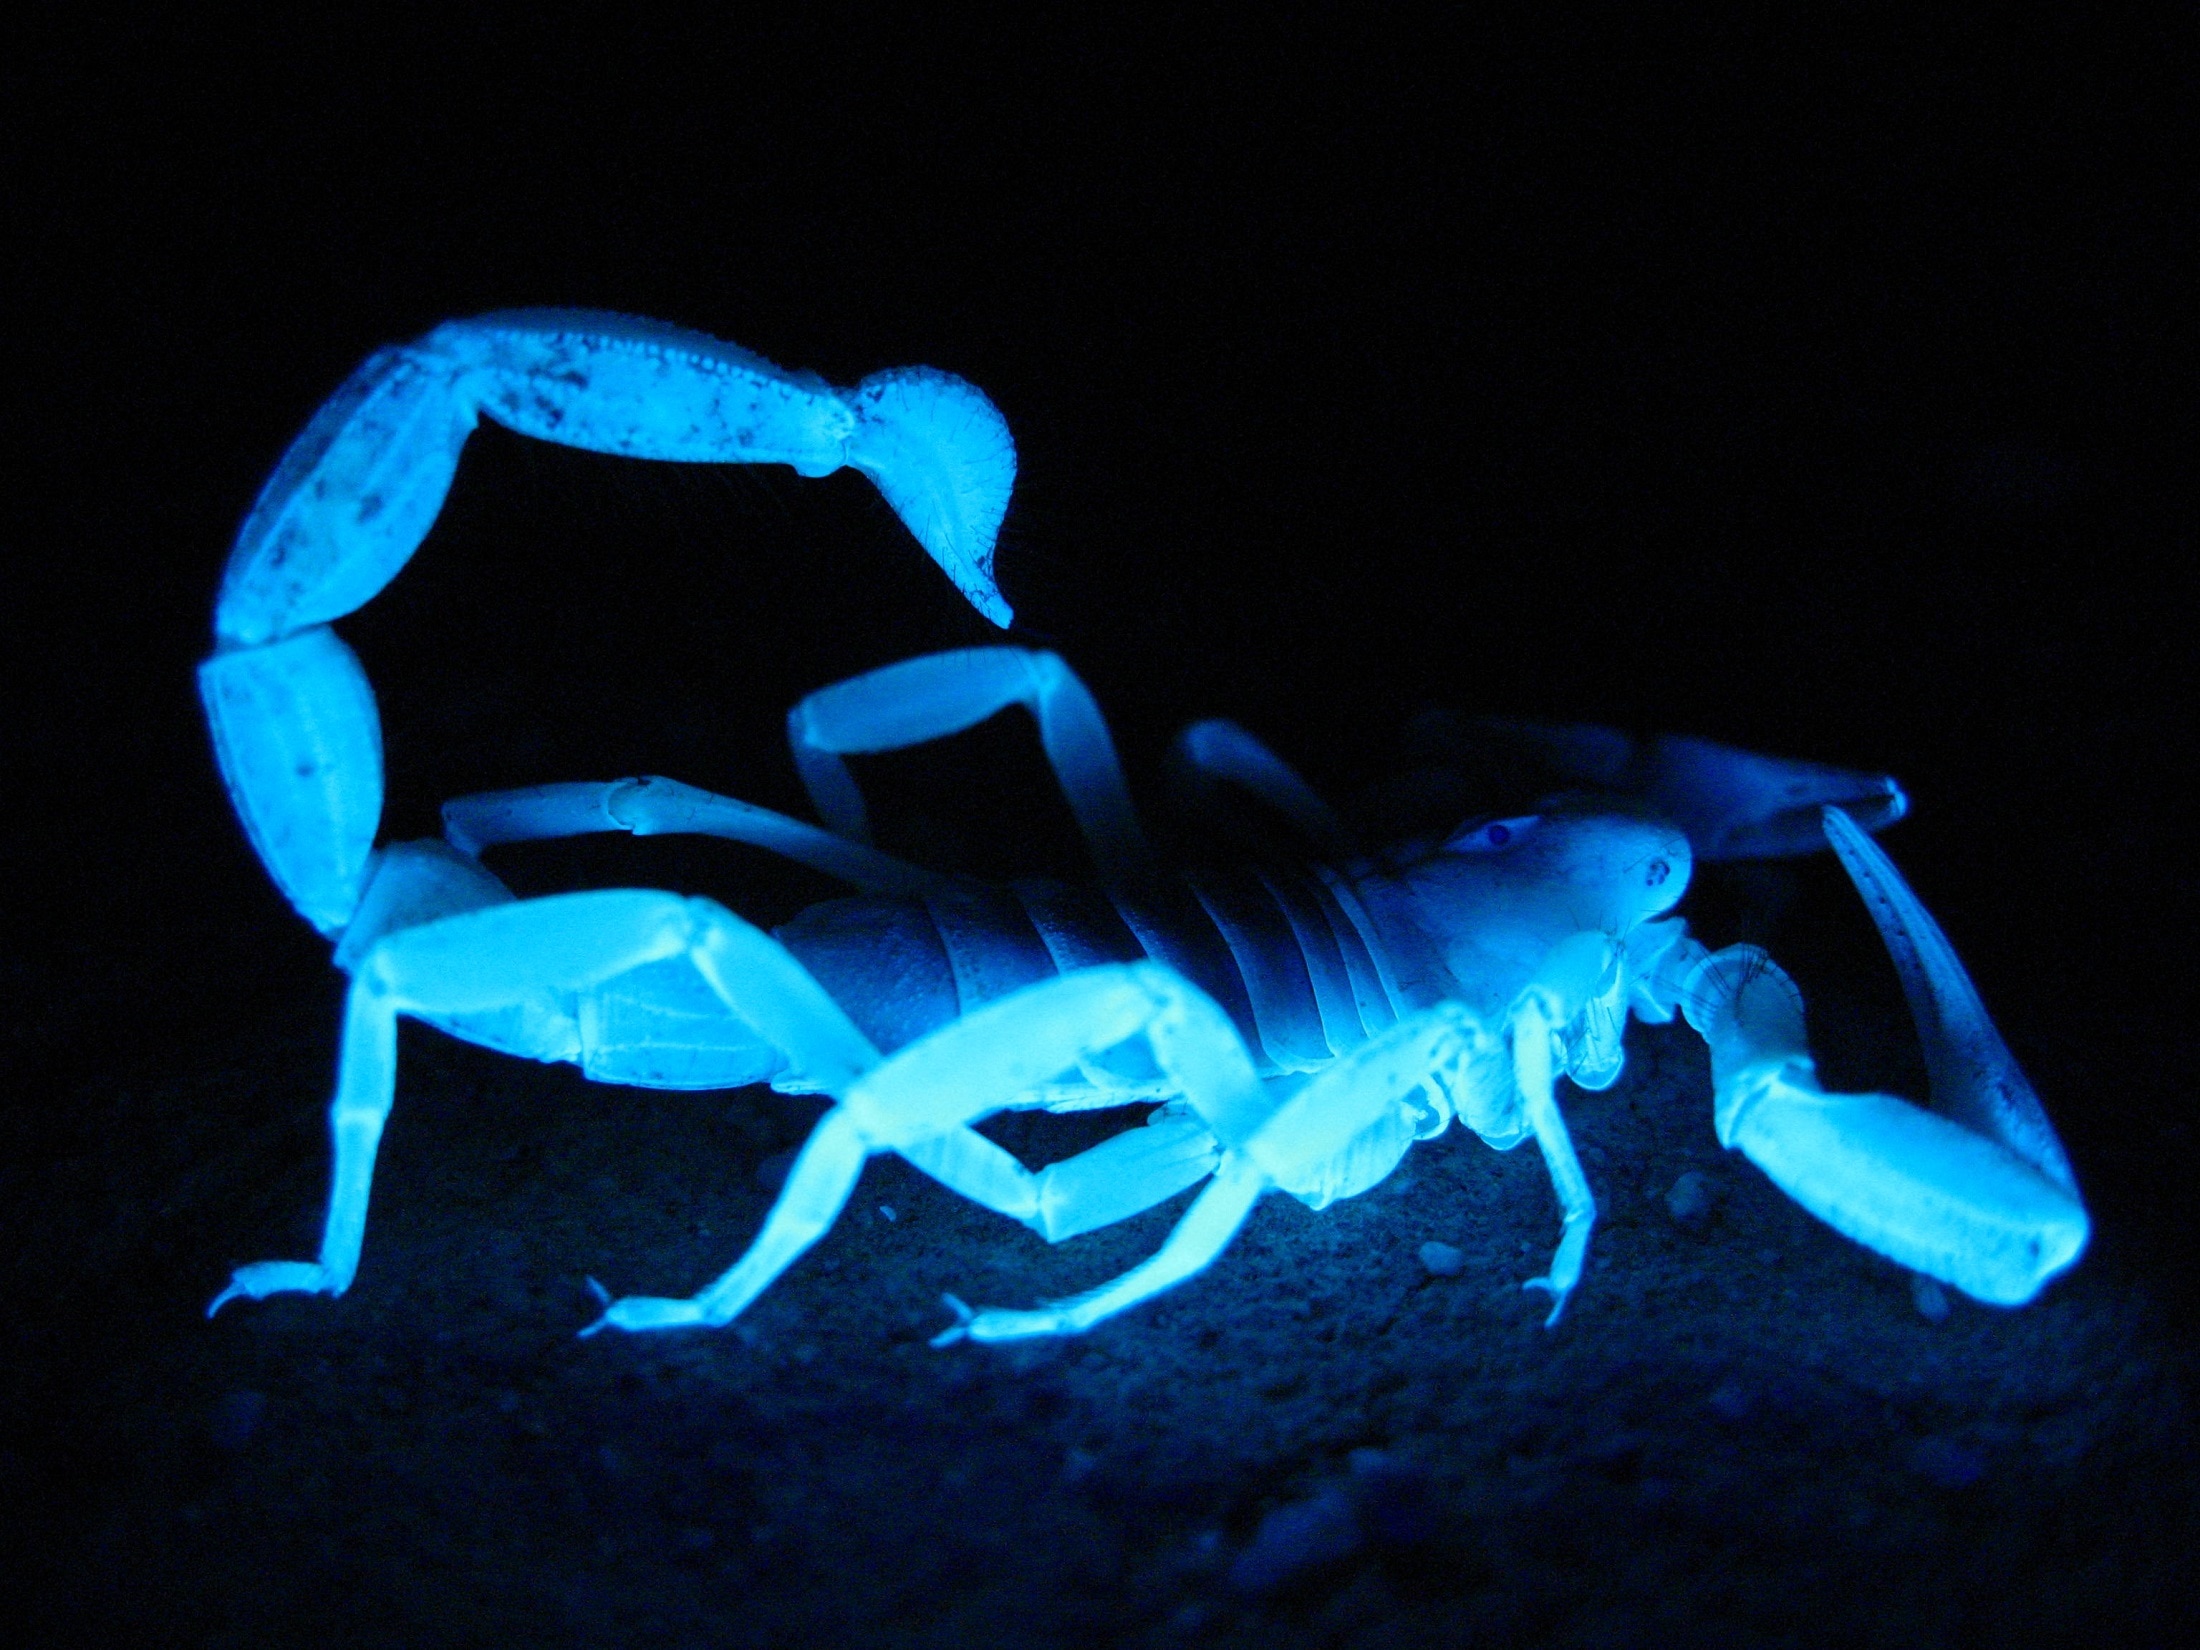 Giant Hairy Scorpion, Fluorescent, Dark, blue, illuminated